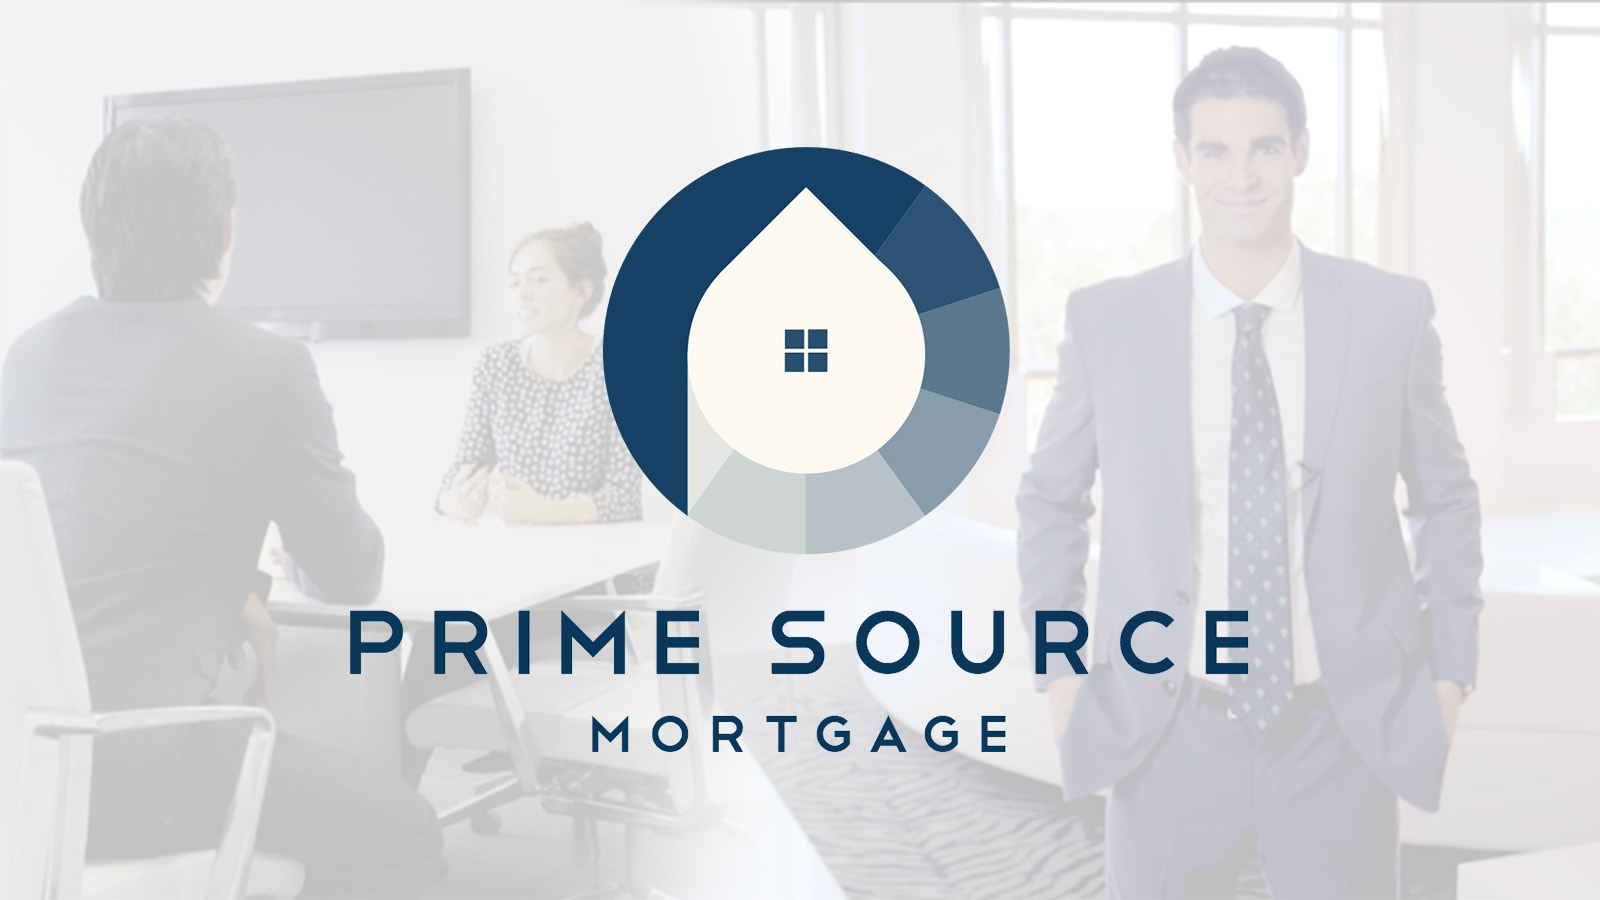 Prime Source Mortgage